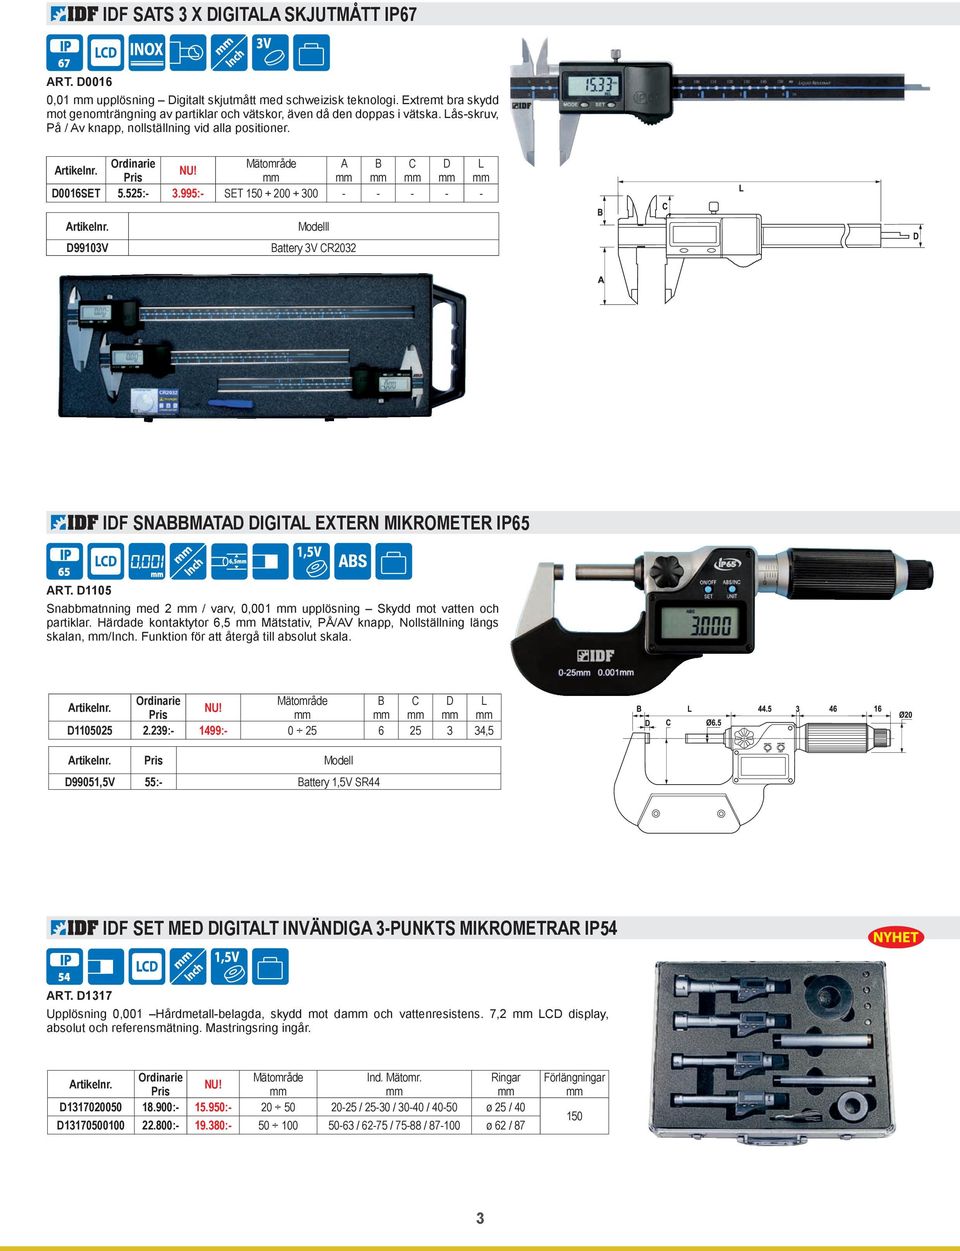 995:- SET 150 + 200 + 300 - - - - - D99103V Modelll Battery 3V CR2032 IDF SNABBMATAD DIGITAL EXTERN MIKROMETER IP65 ART.